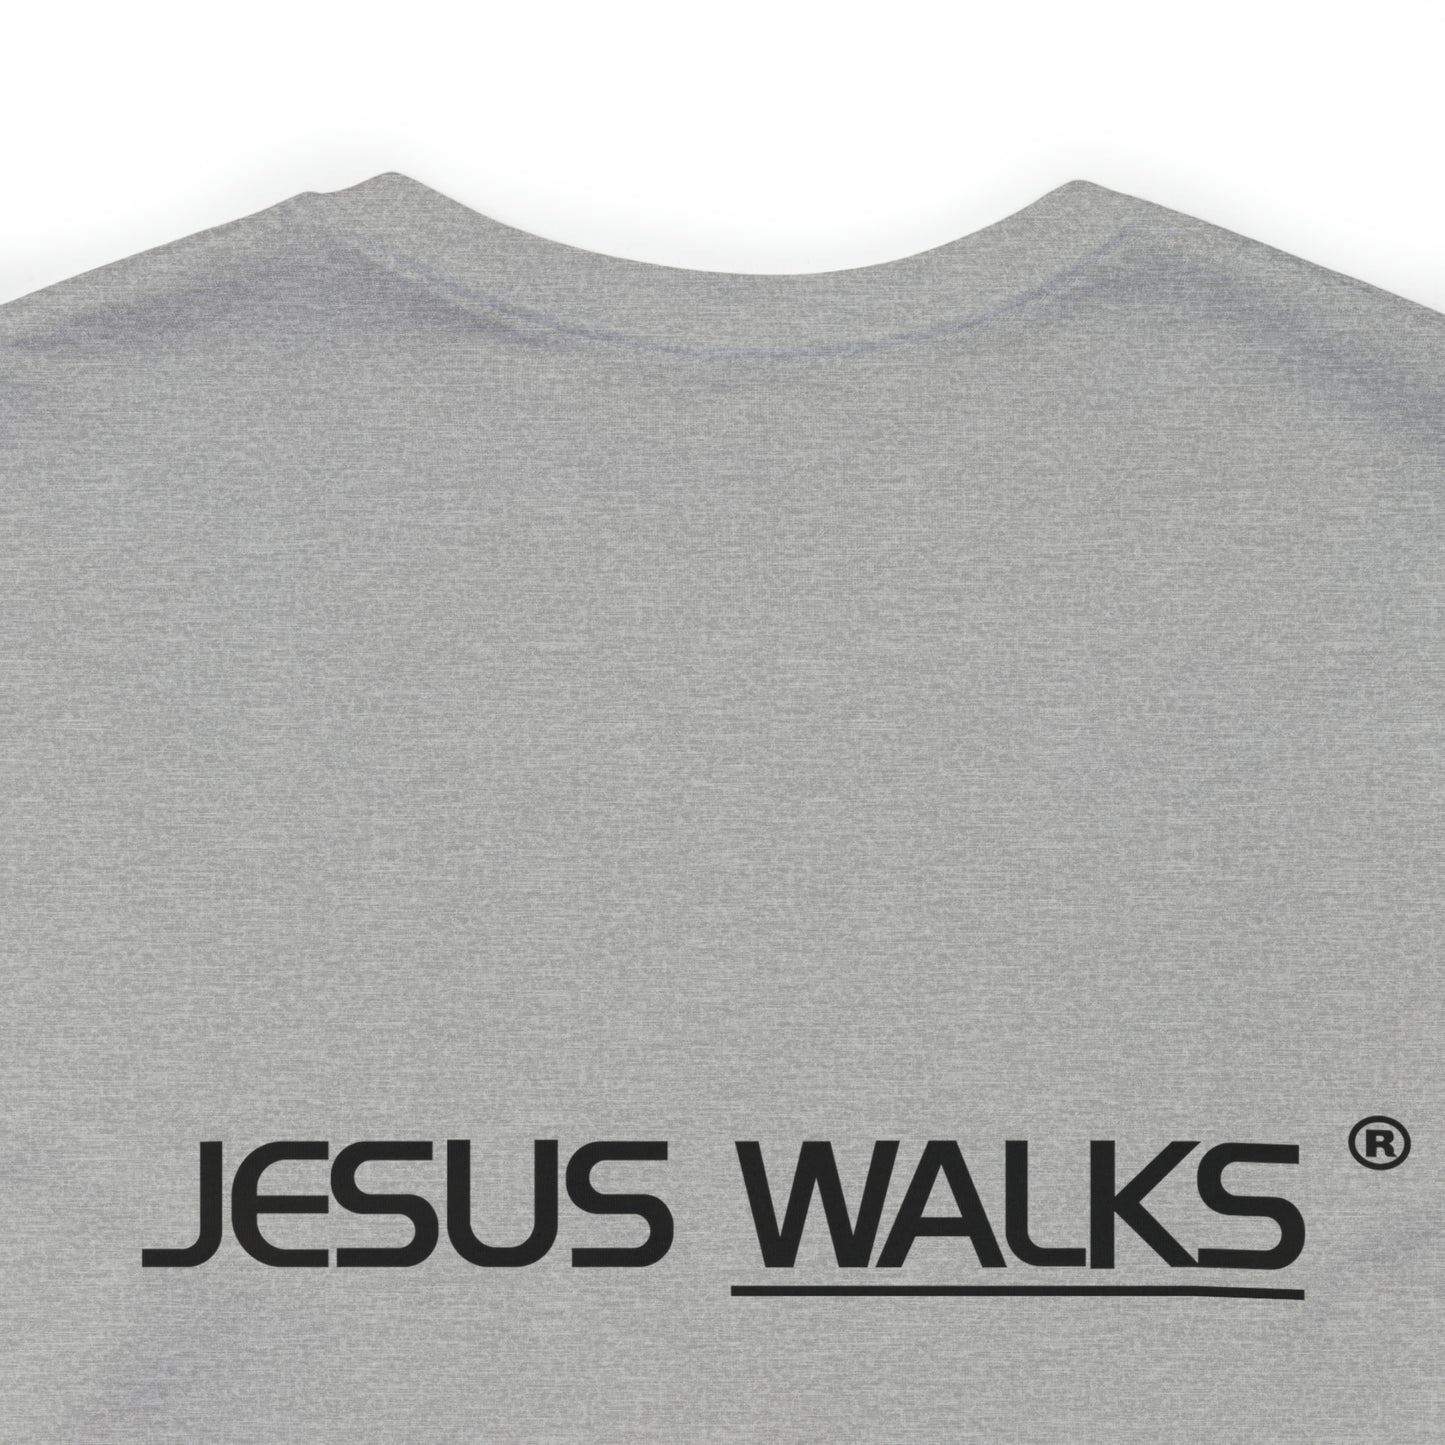 Unisex JESUS WALKS® Short Sleeve Tee